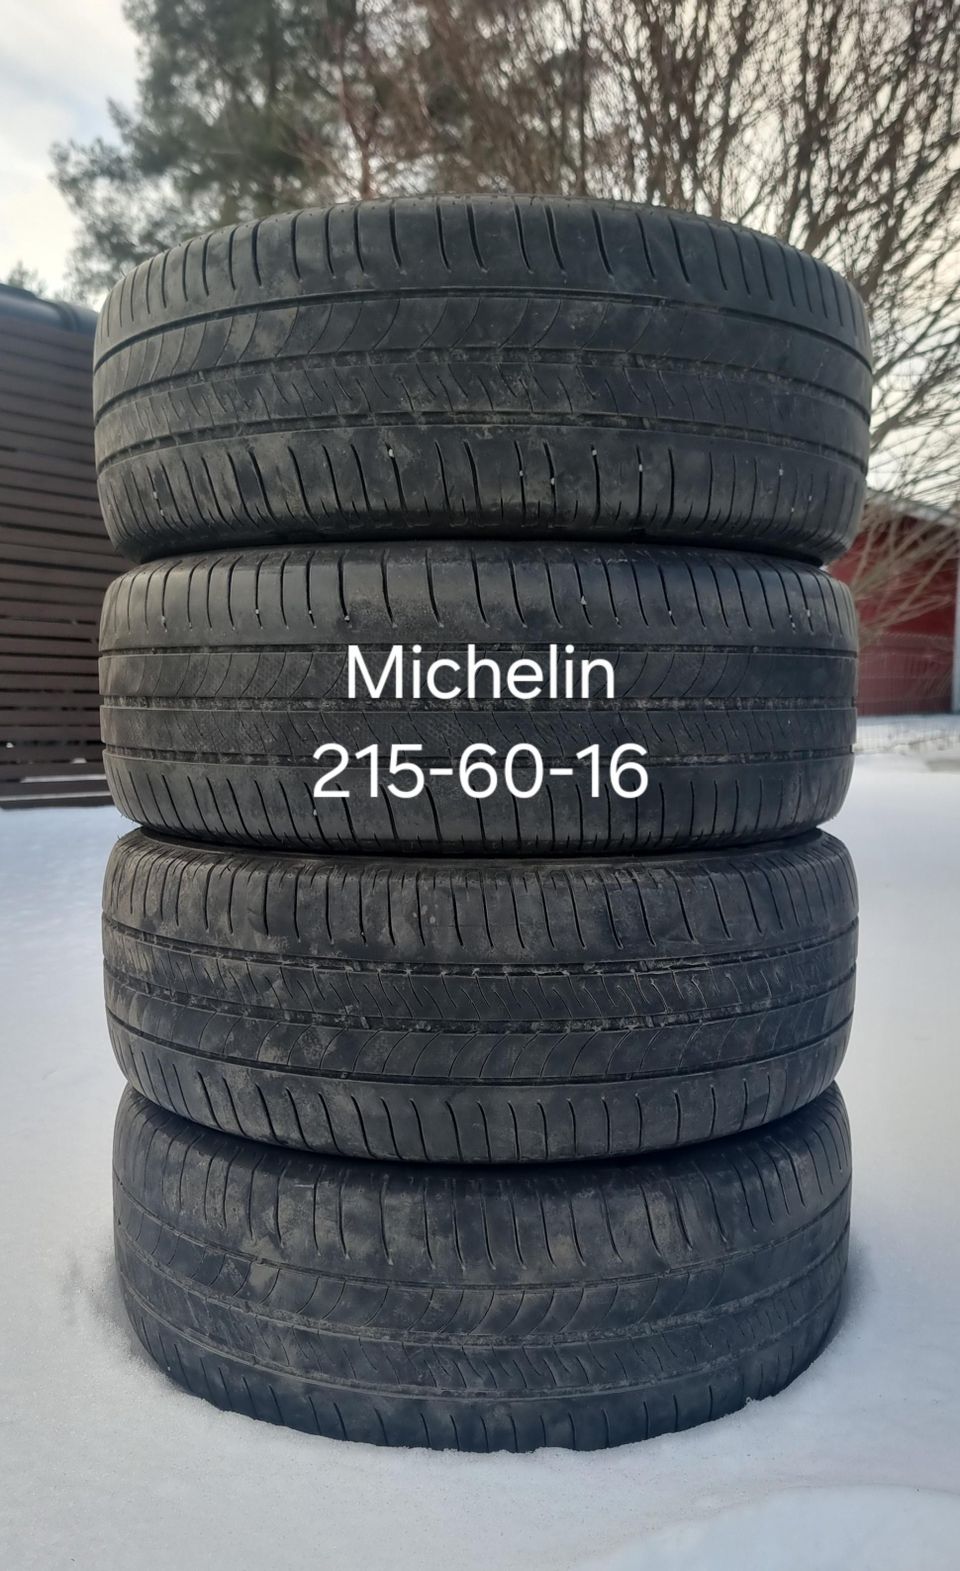 Michelin 215-60-16 kesärenkaat